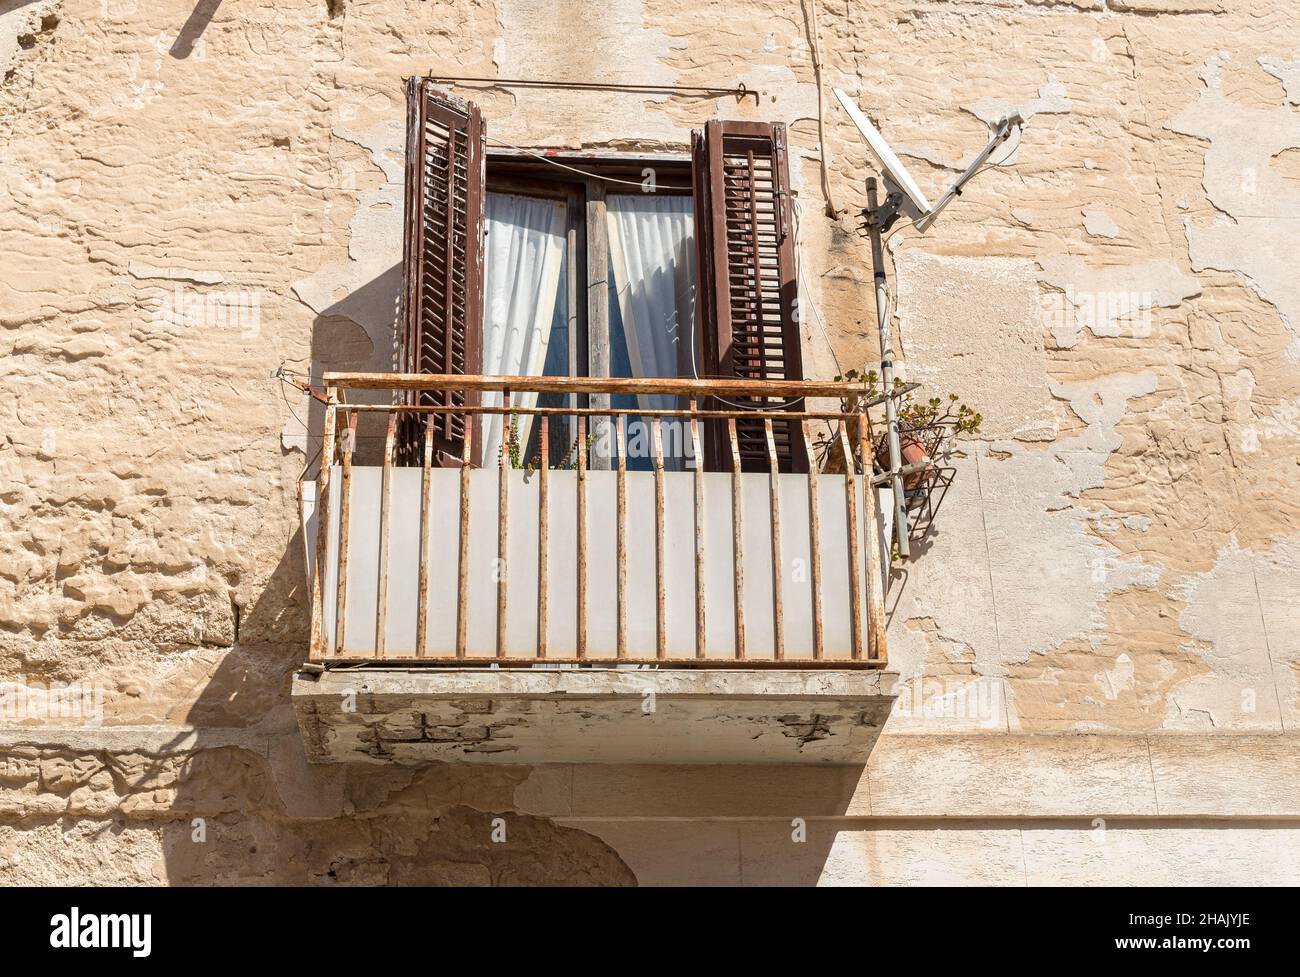 Alter Balkon mit alten hölzernen Fensterläden an der Steinmauer des typischen alten mediterranen Hauses in Sizilien. Stockfoto